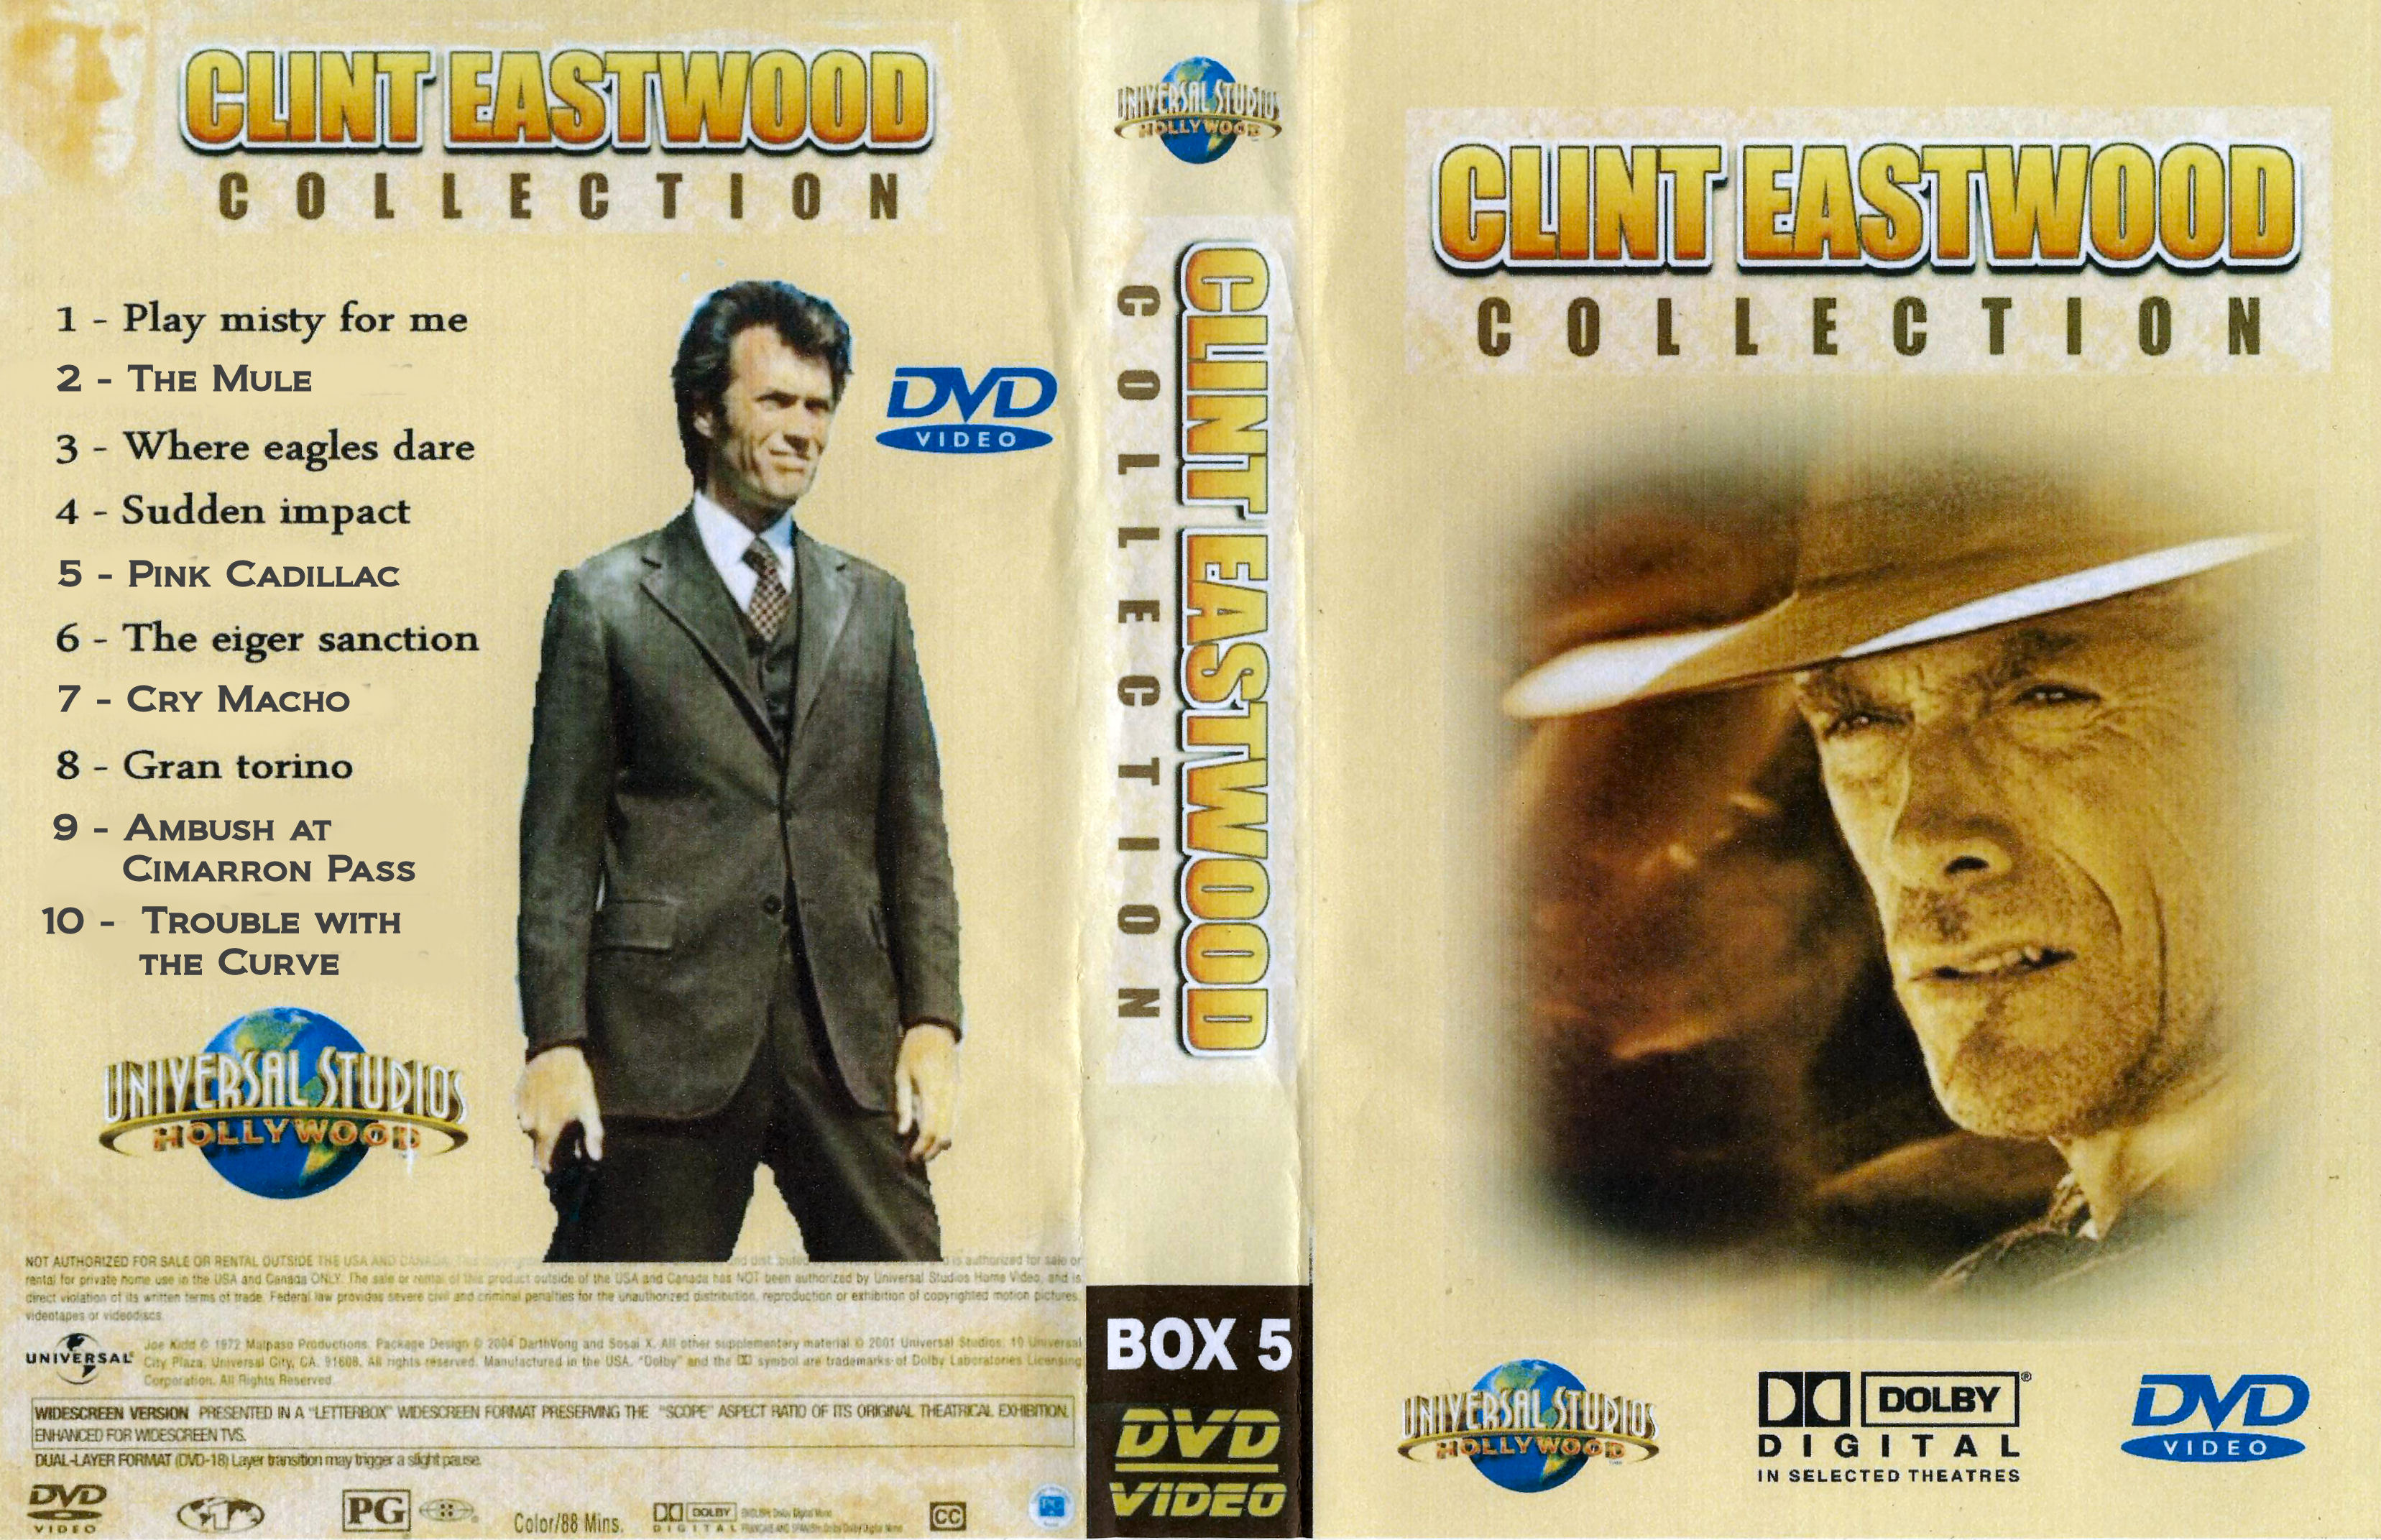 Clint Eastwood Collectie Box 5 DvD 9 van 10